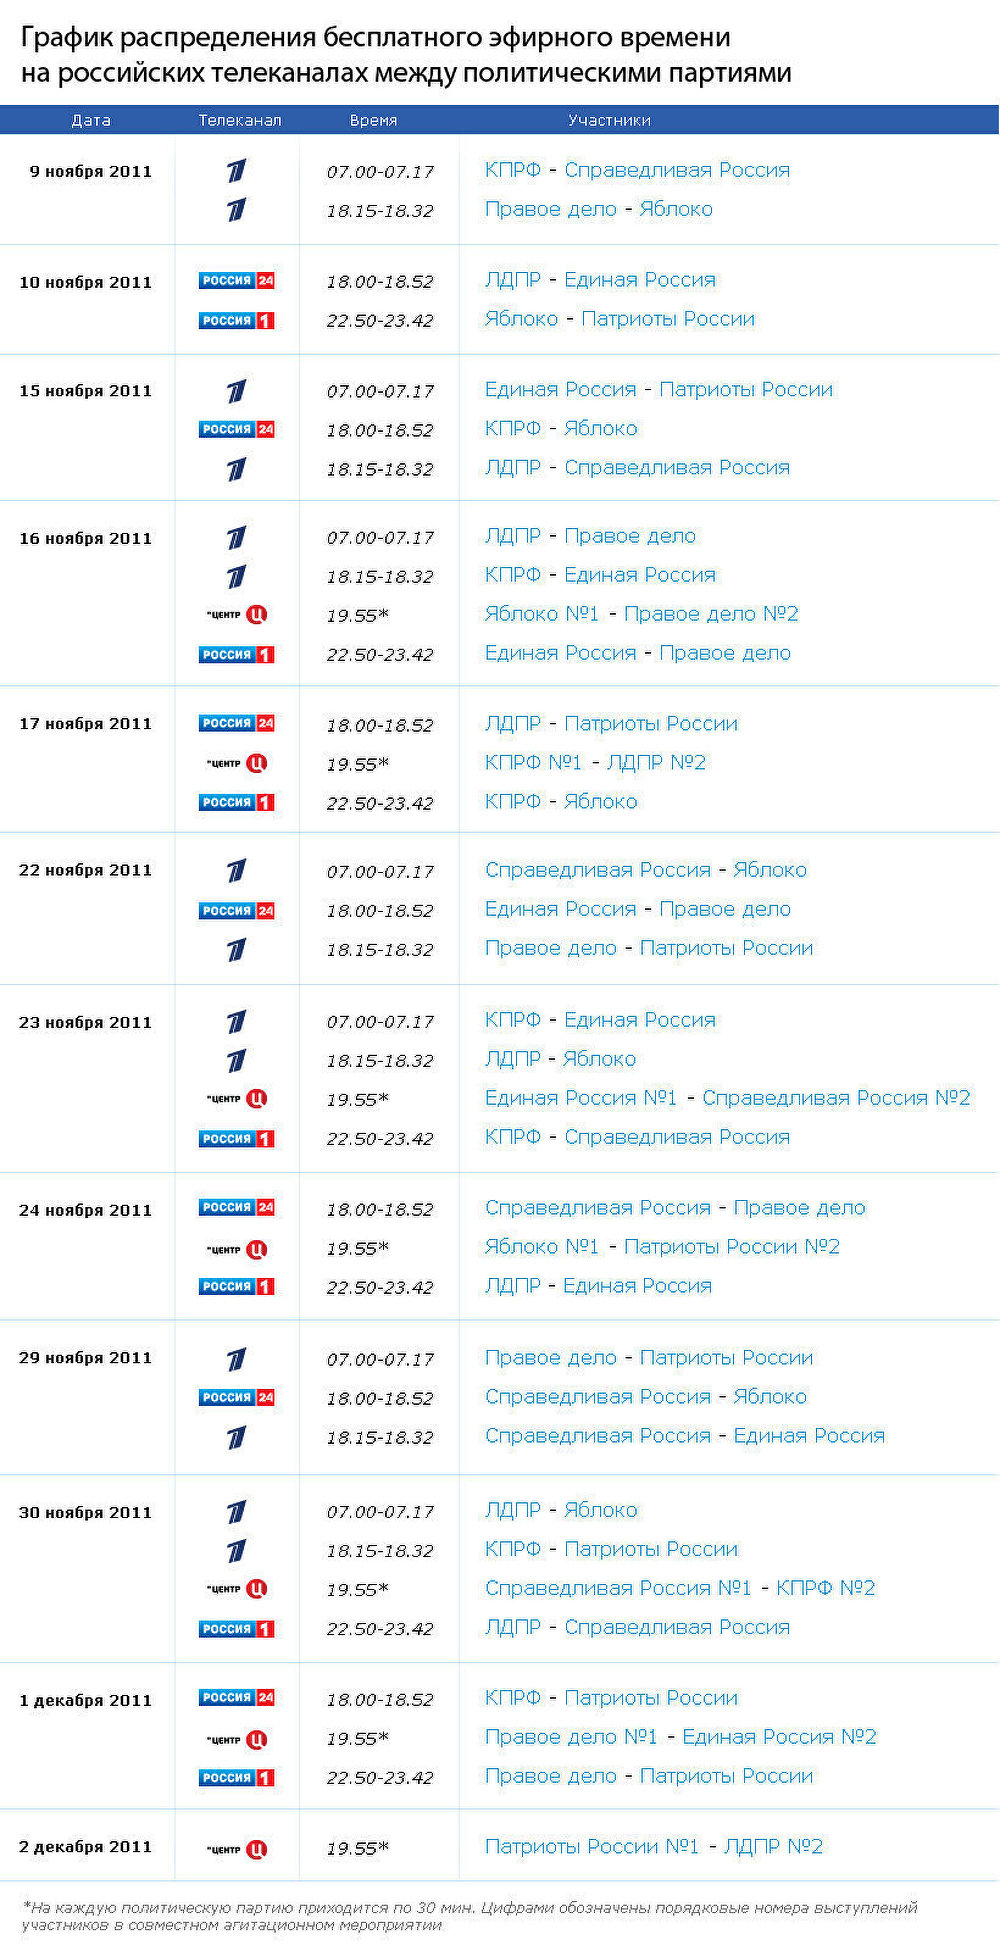 График распределения бесплатного эфирного времени на российских телеканалах между партиями